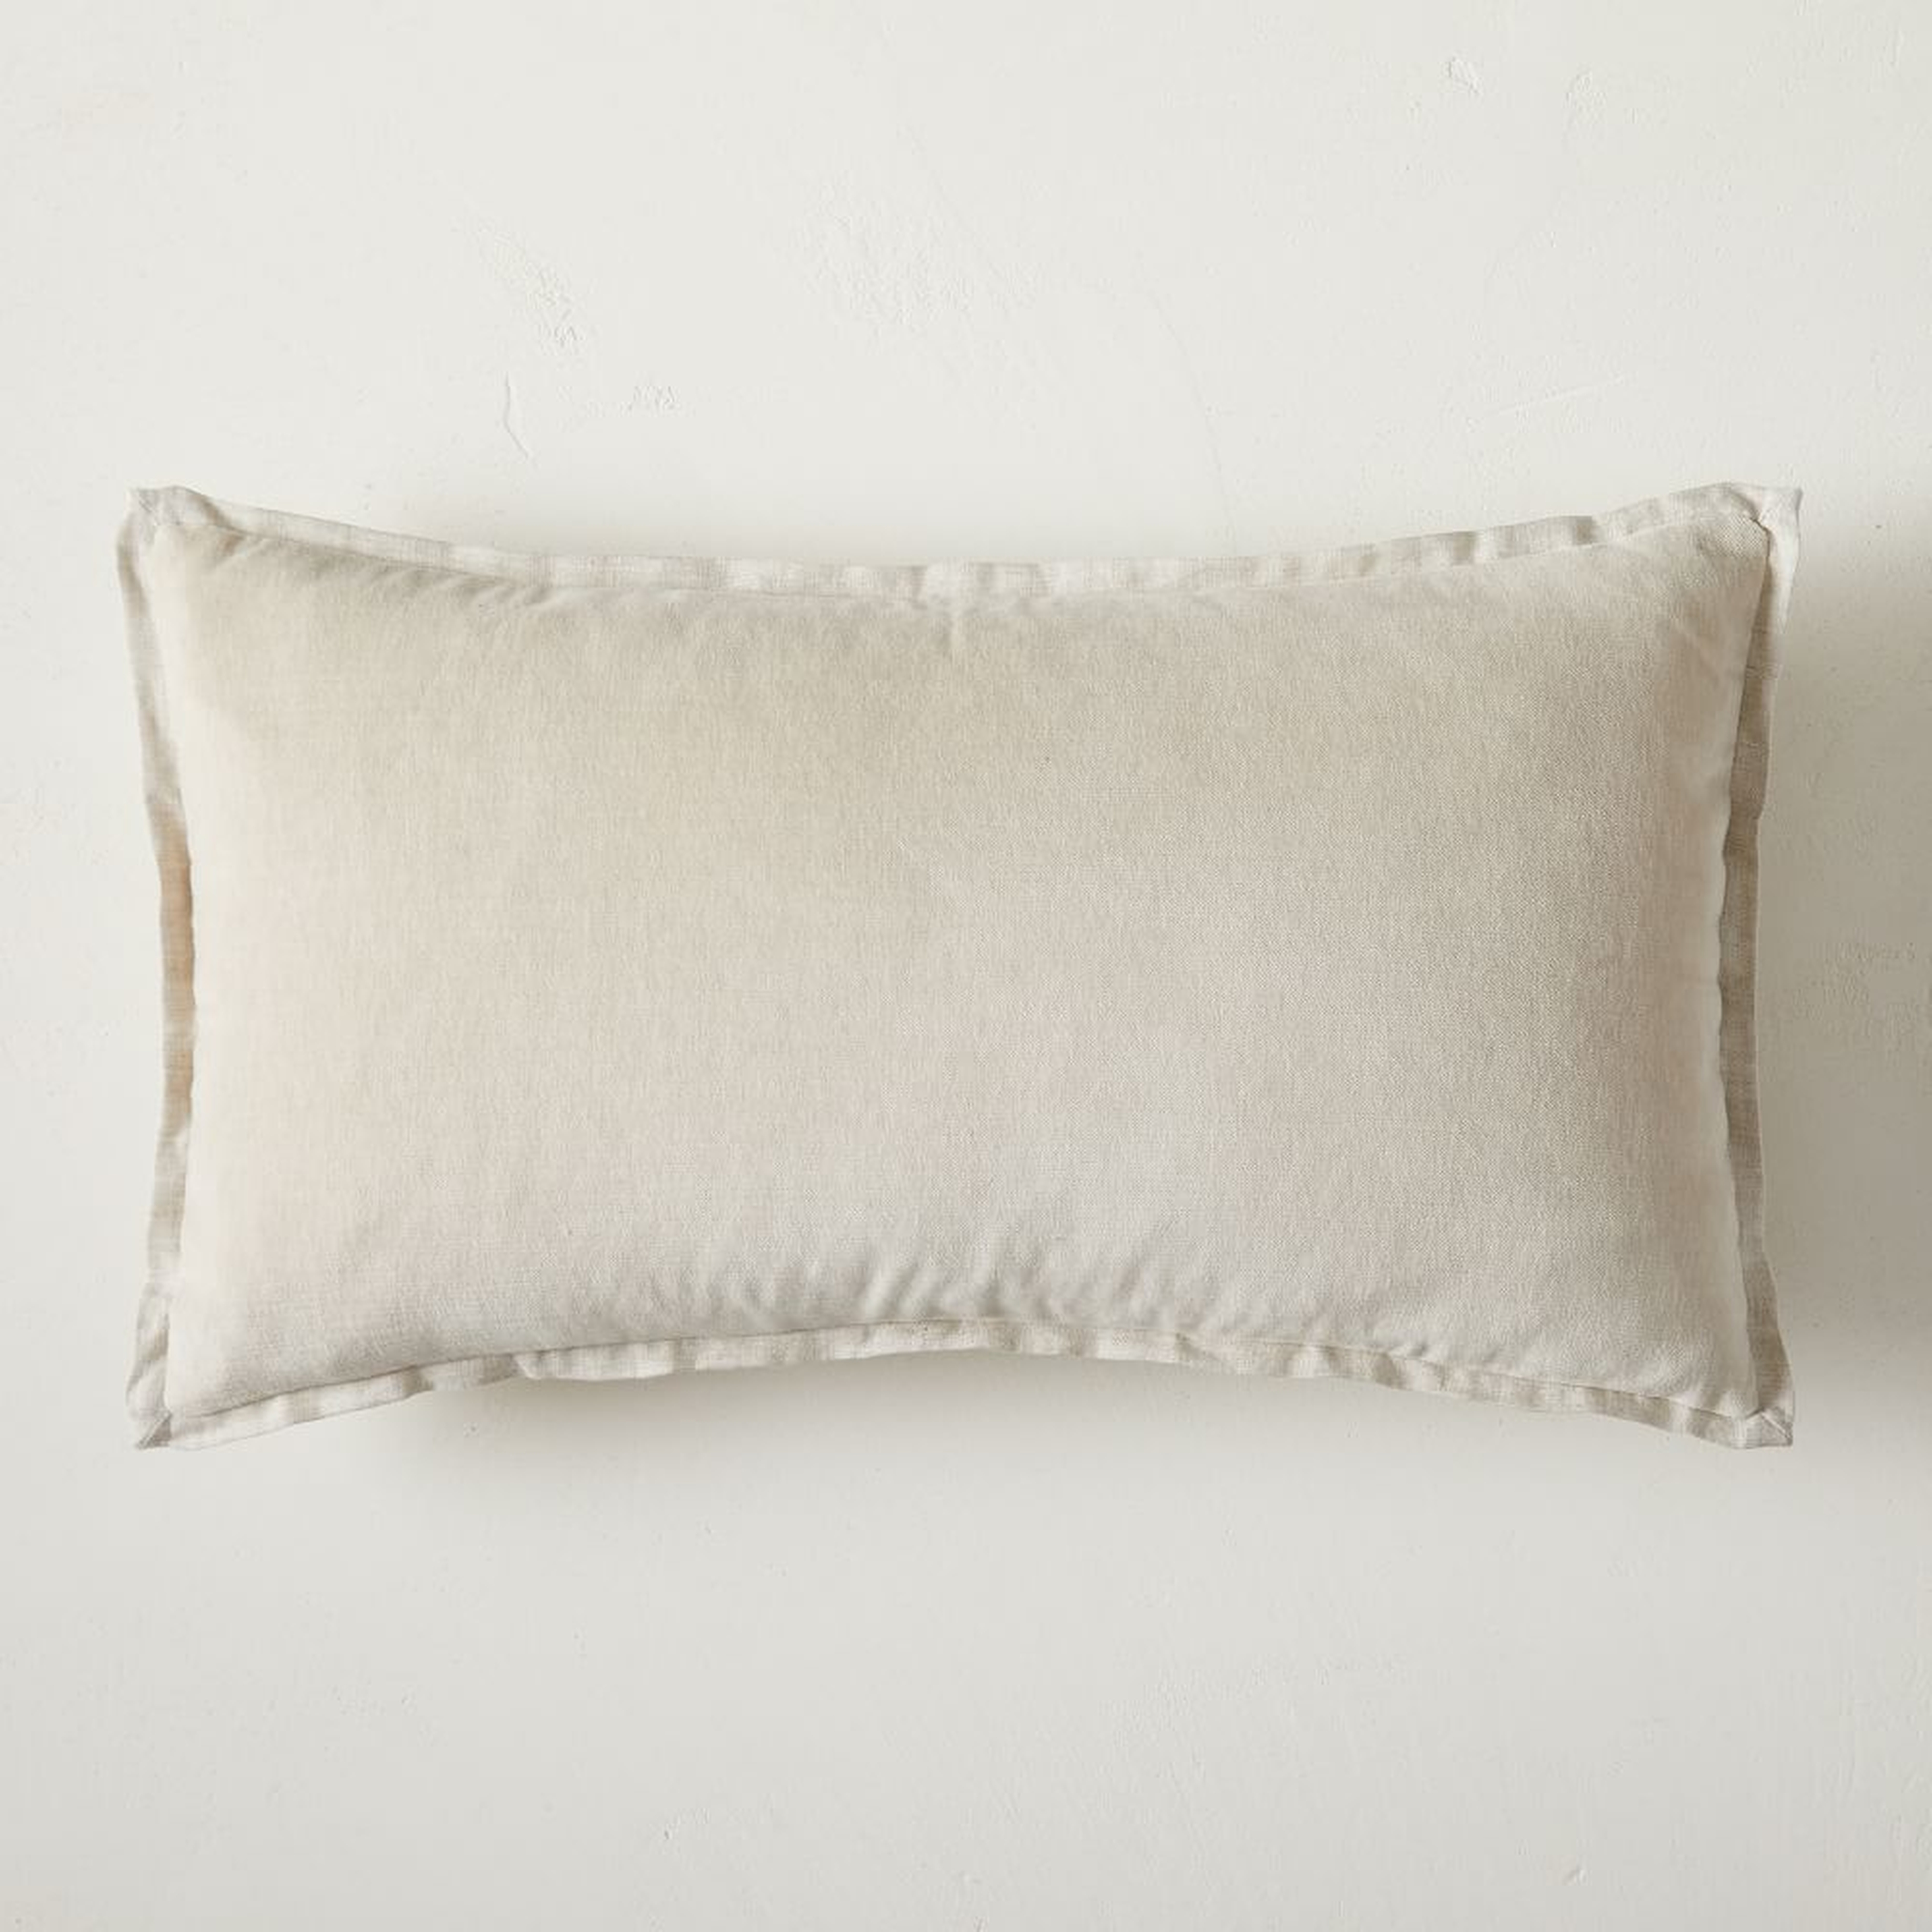 Classic Cotton Velvet Pillow Cover, 12"x21", Natural - West Elm